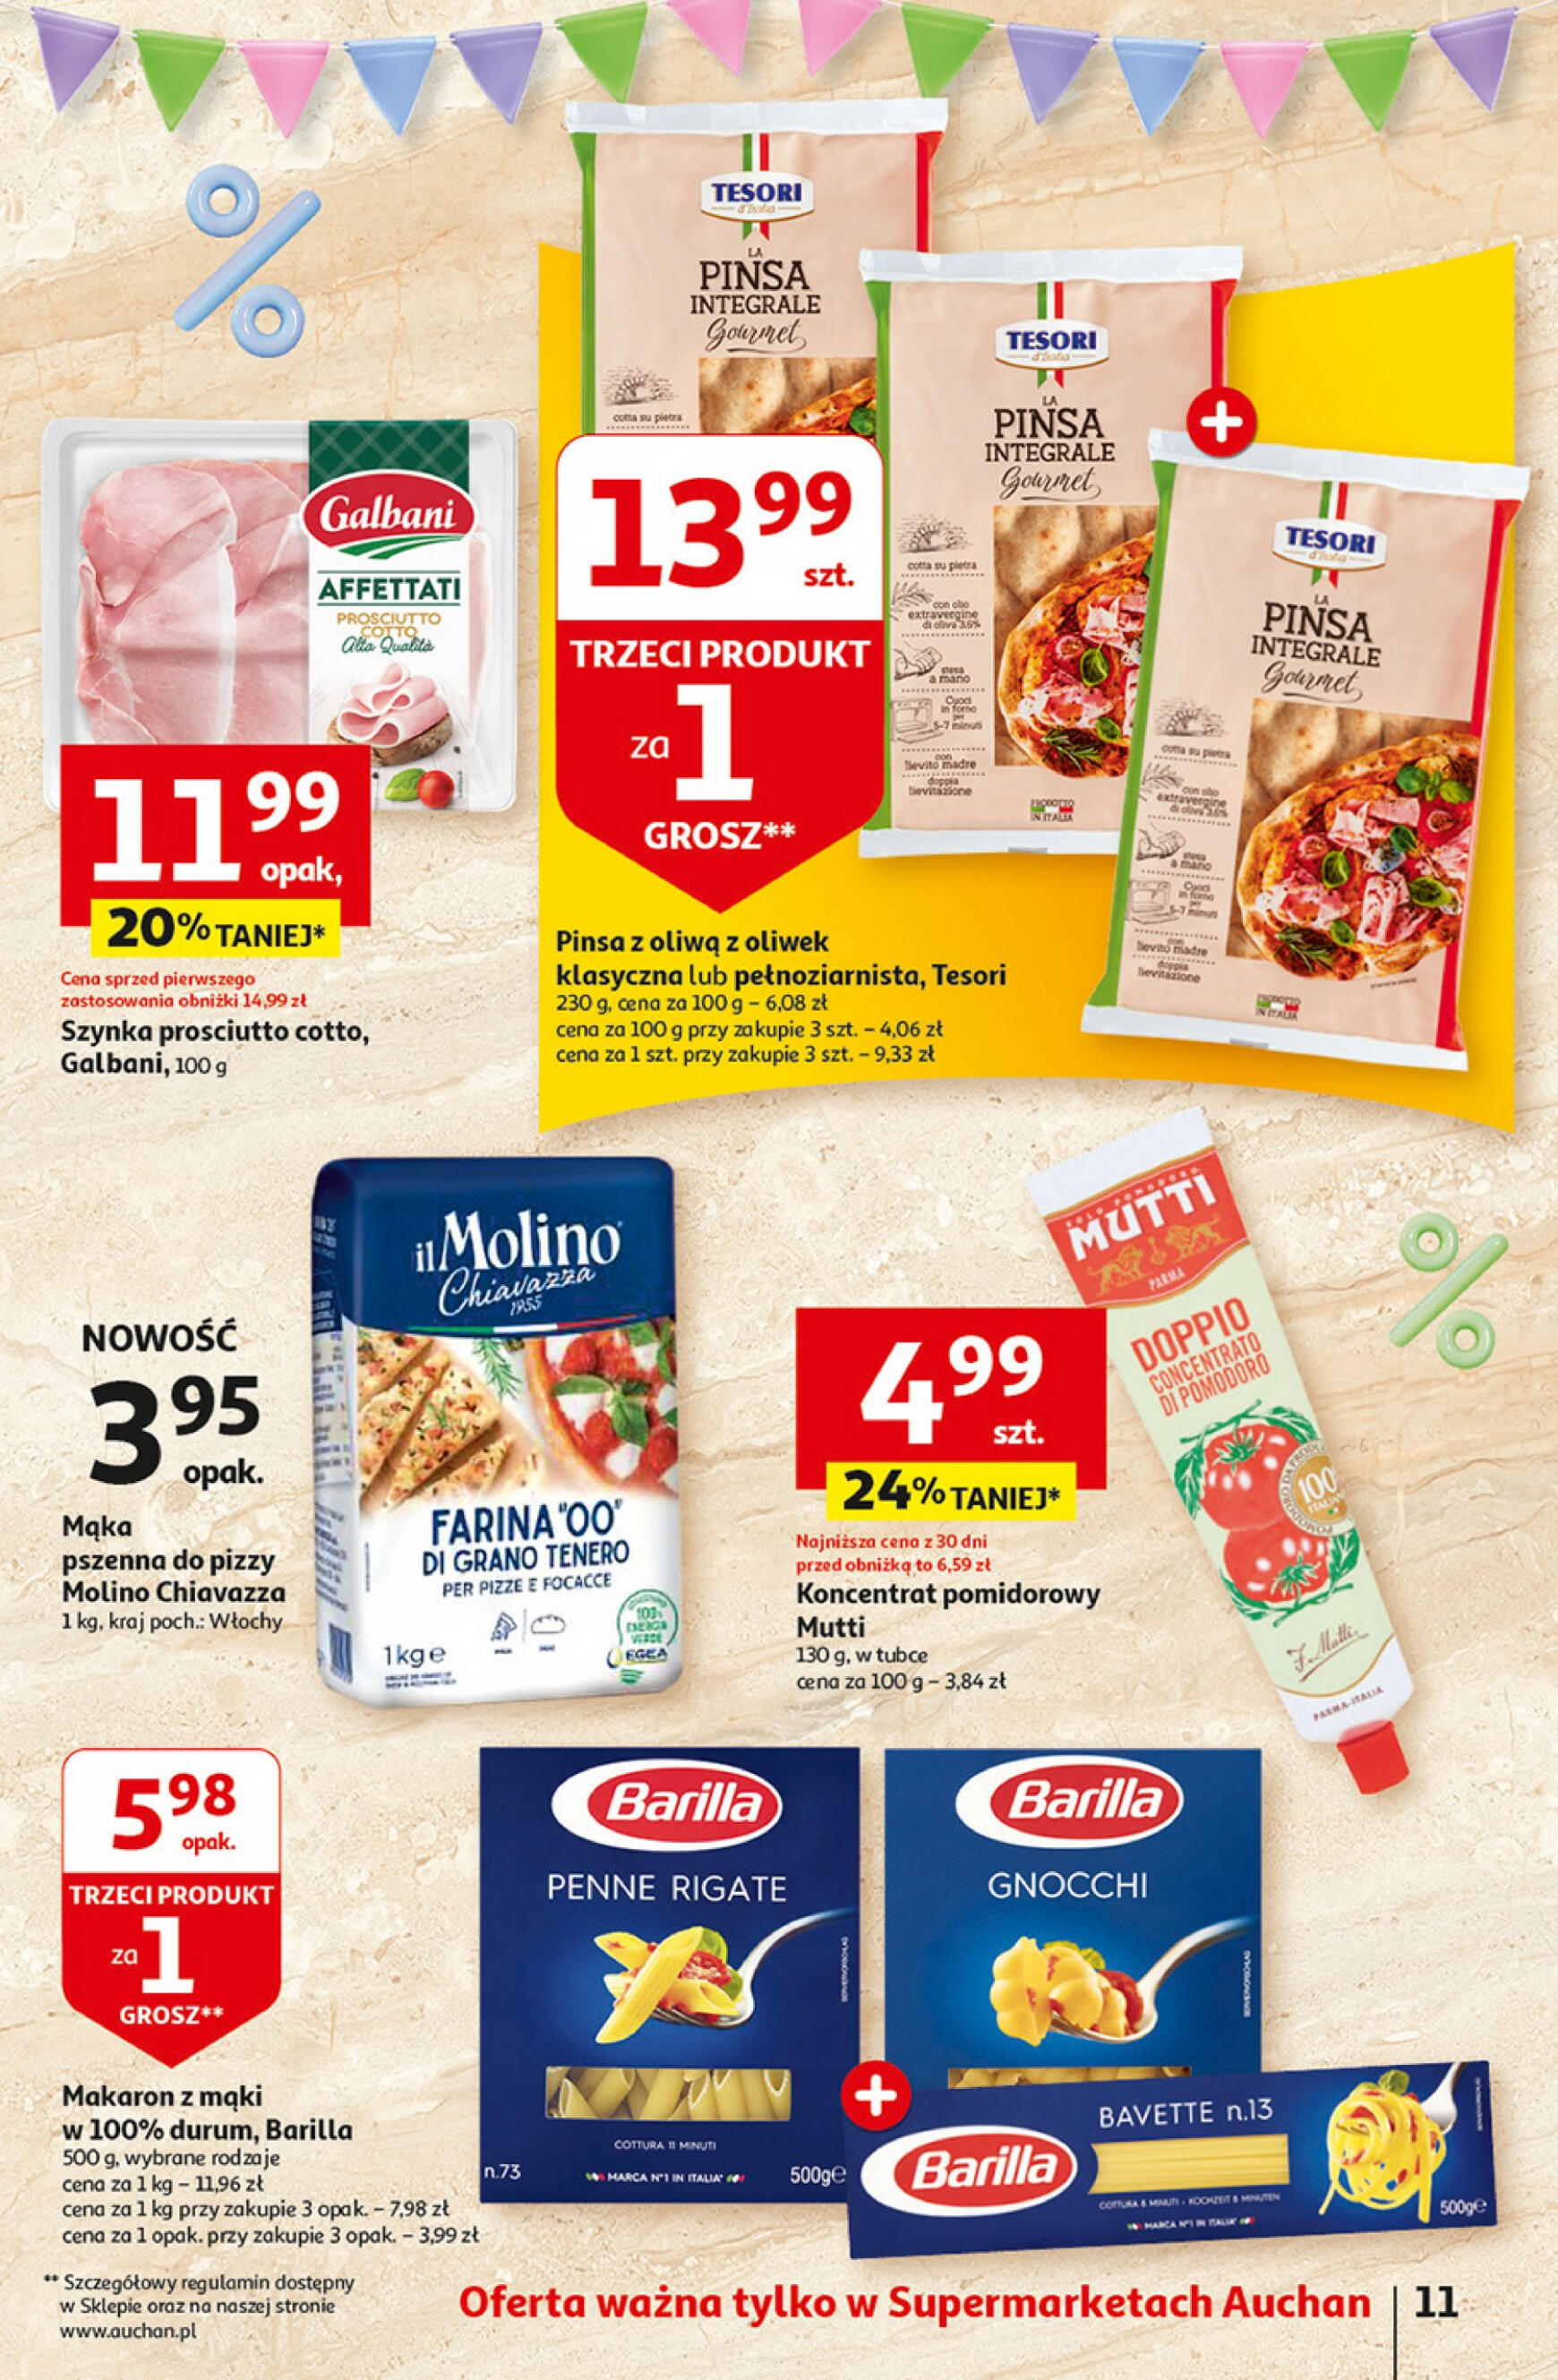 auchan - Supermarket Auchan - Gazetka Jeszcze taniej na urodziny gazetka aktualna ważna od 09.05. - 15.05. - page: 11